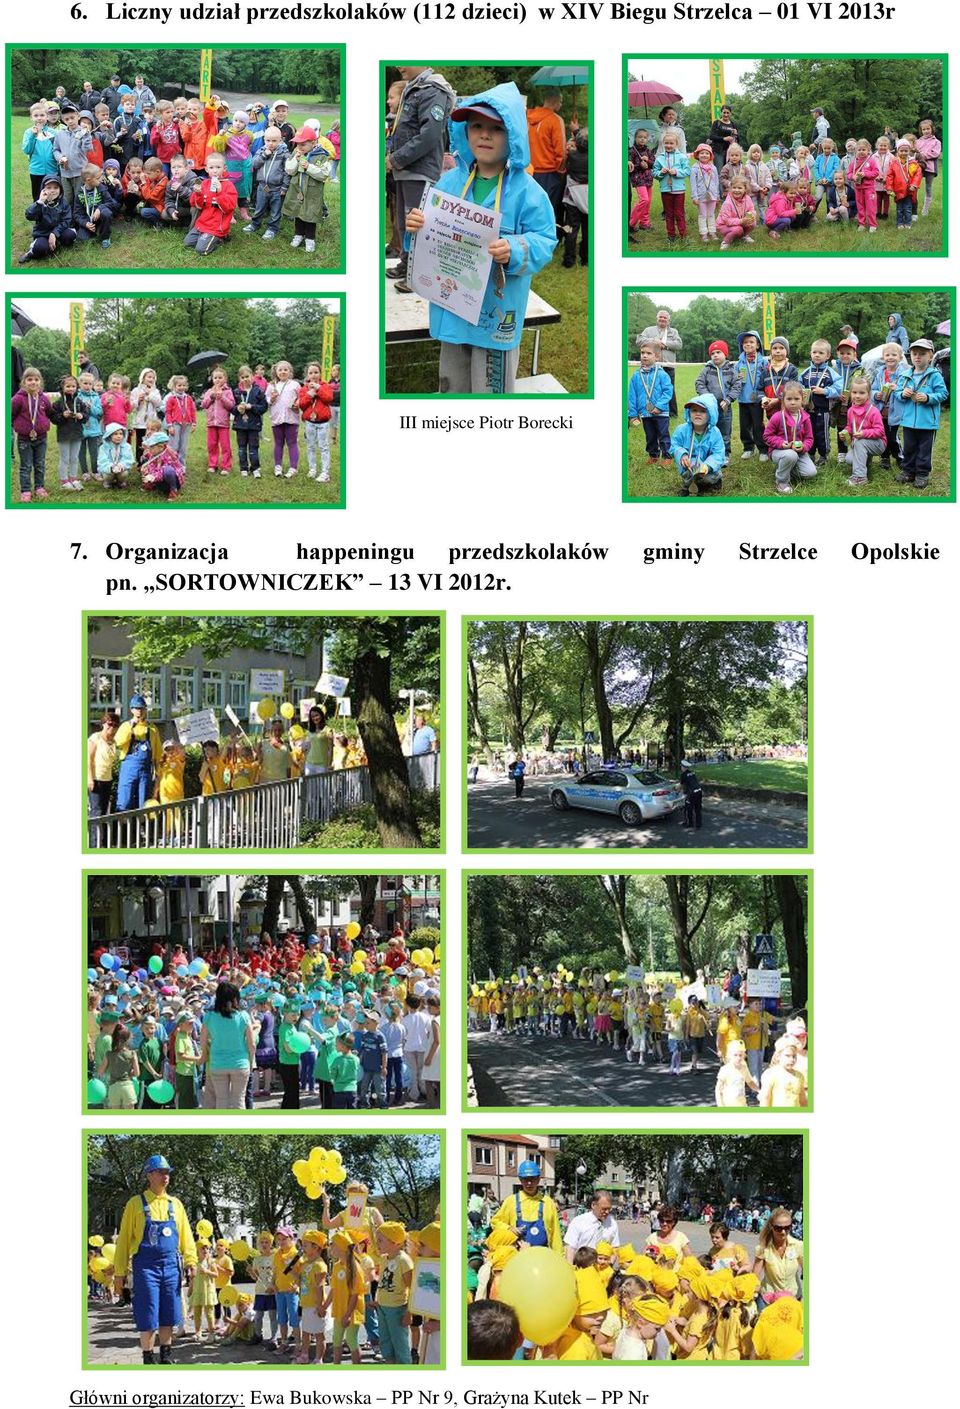 Organizacja happeningu przedszkolaków gminy Strzelce Opolskie pn.